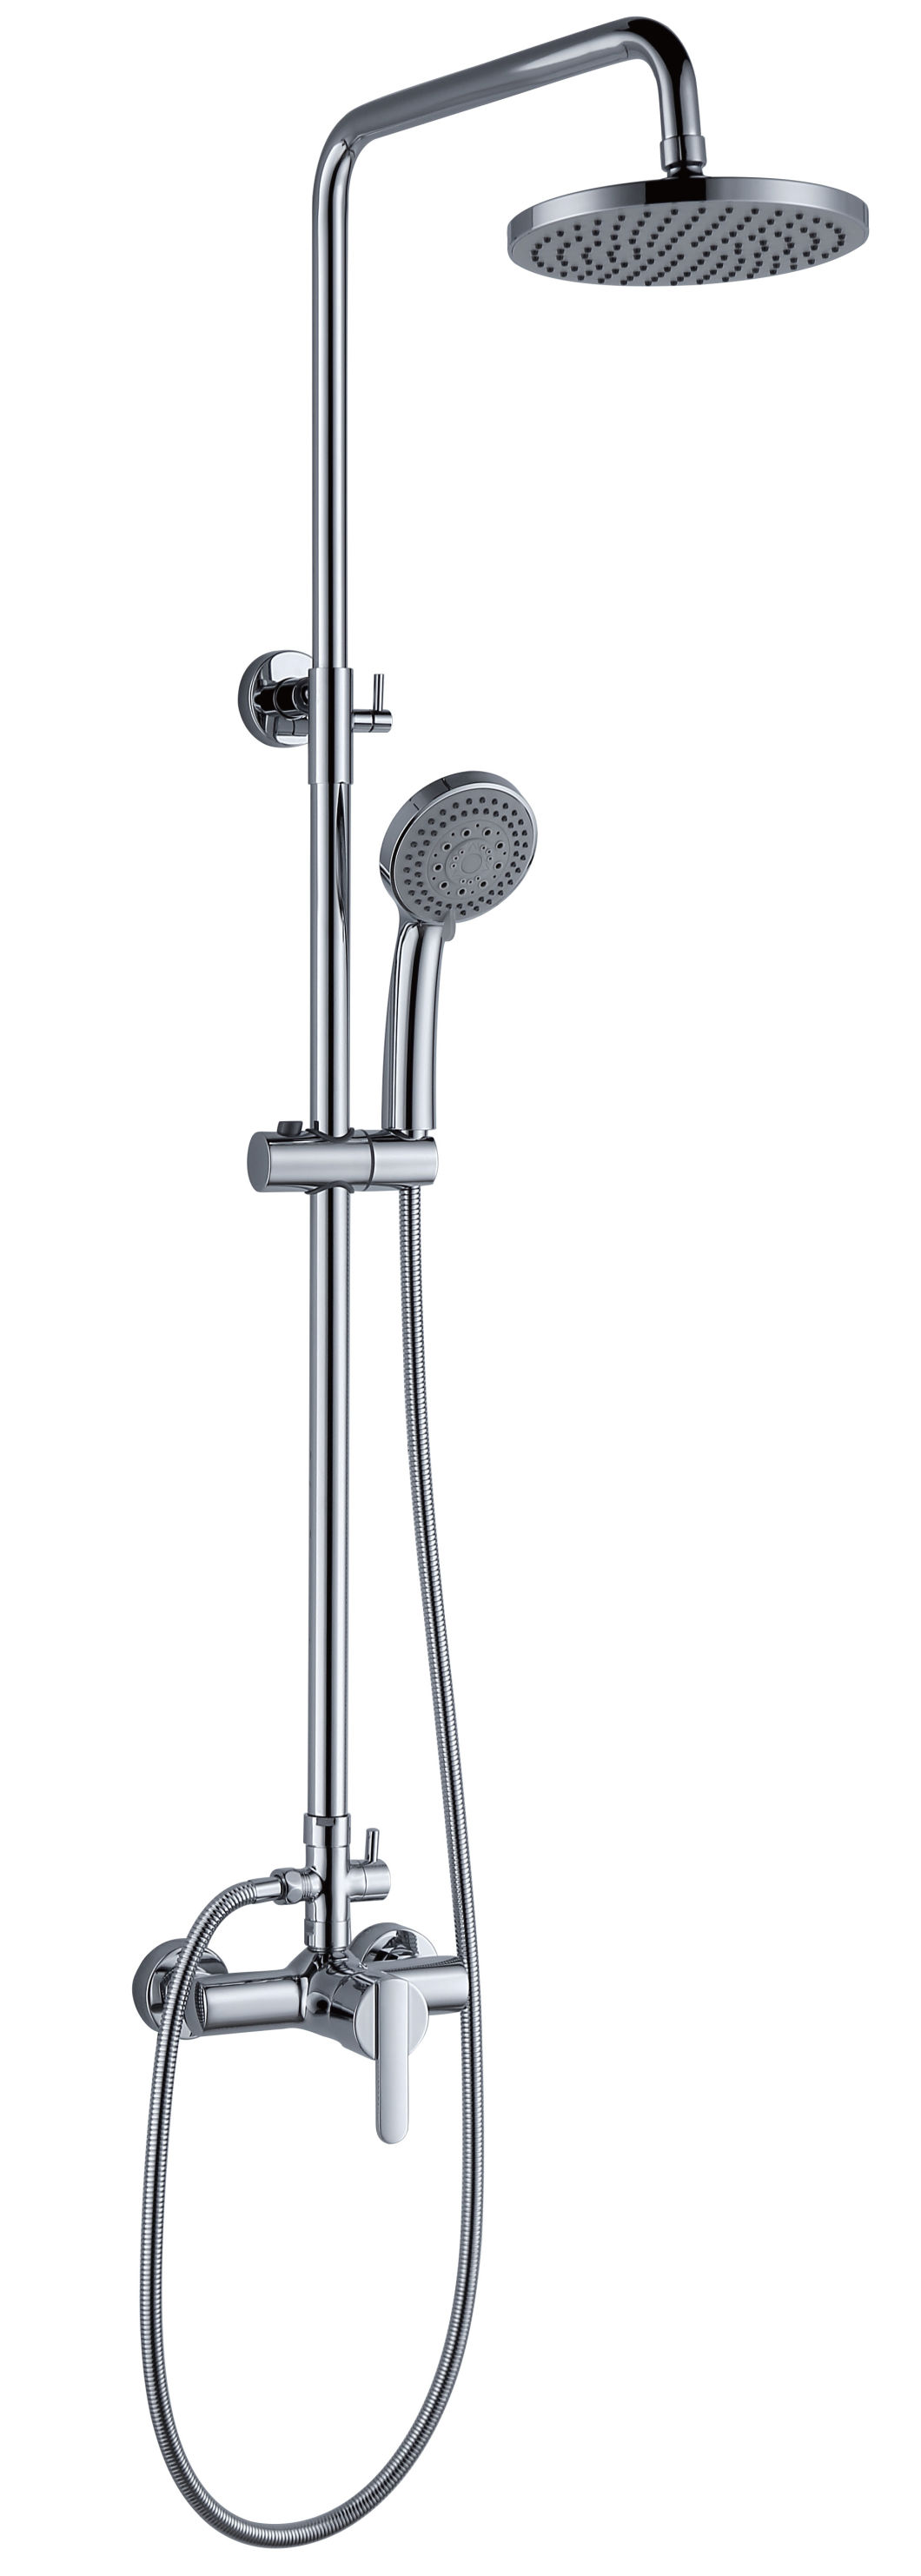 Bath Shower Faucets, Square Rain Shower Head Set, Cheap But Good Quality Shower Head Set (881021C)